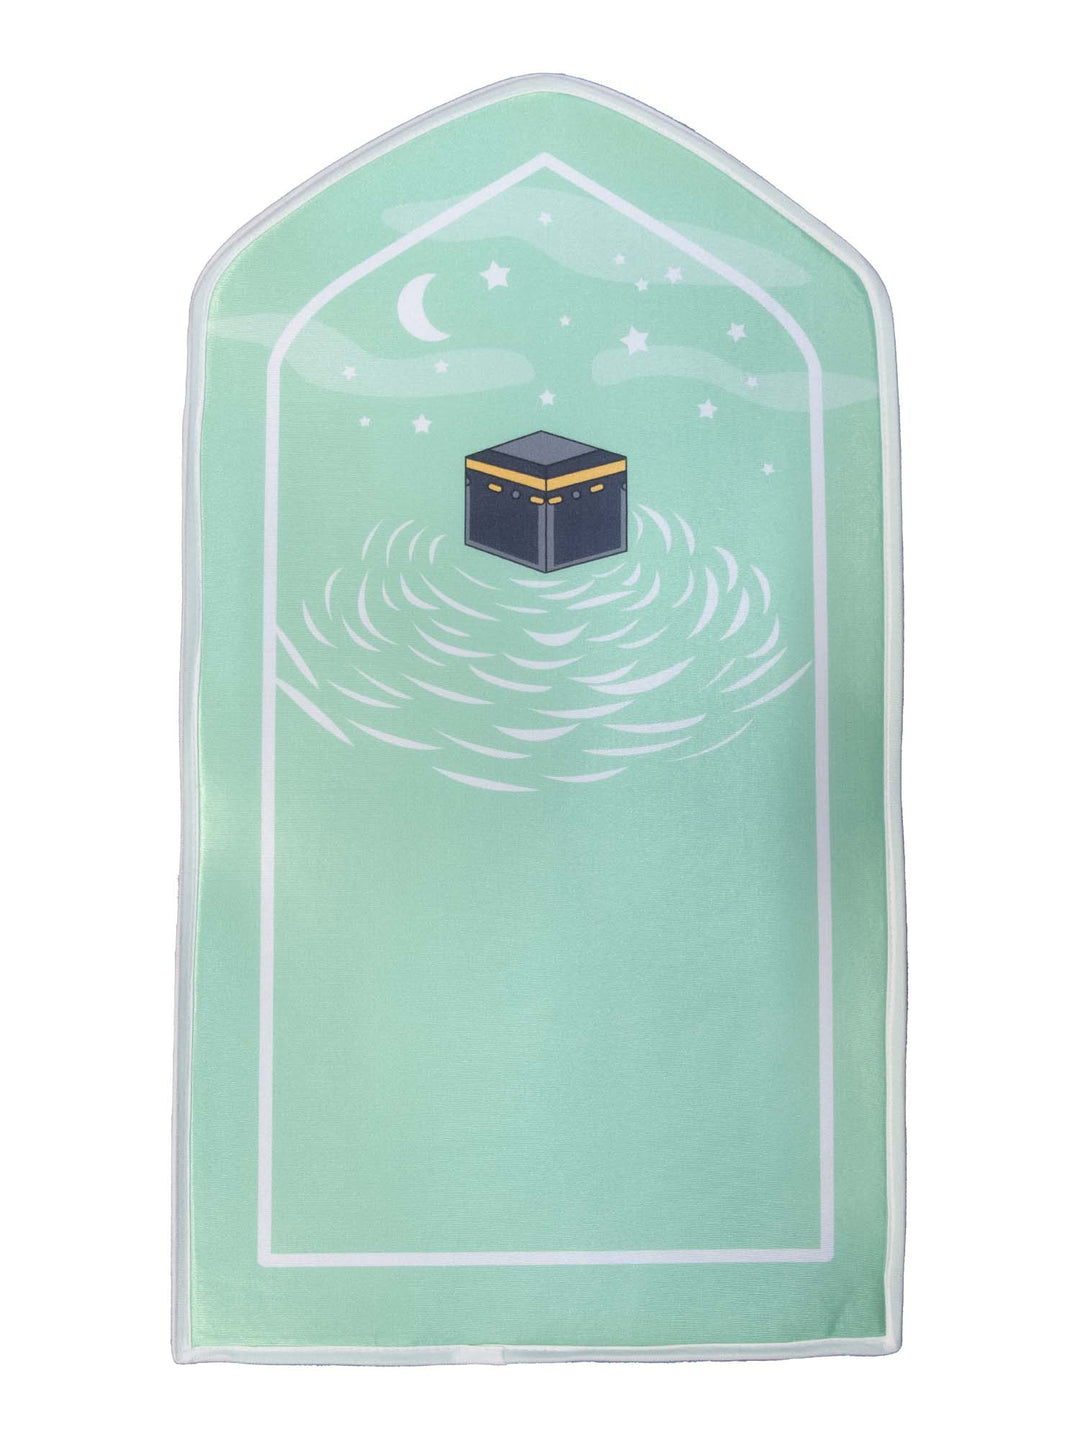 Children's Prayer Mat - Sponge - Kaaba Design